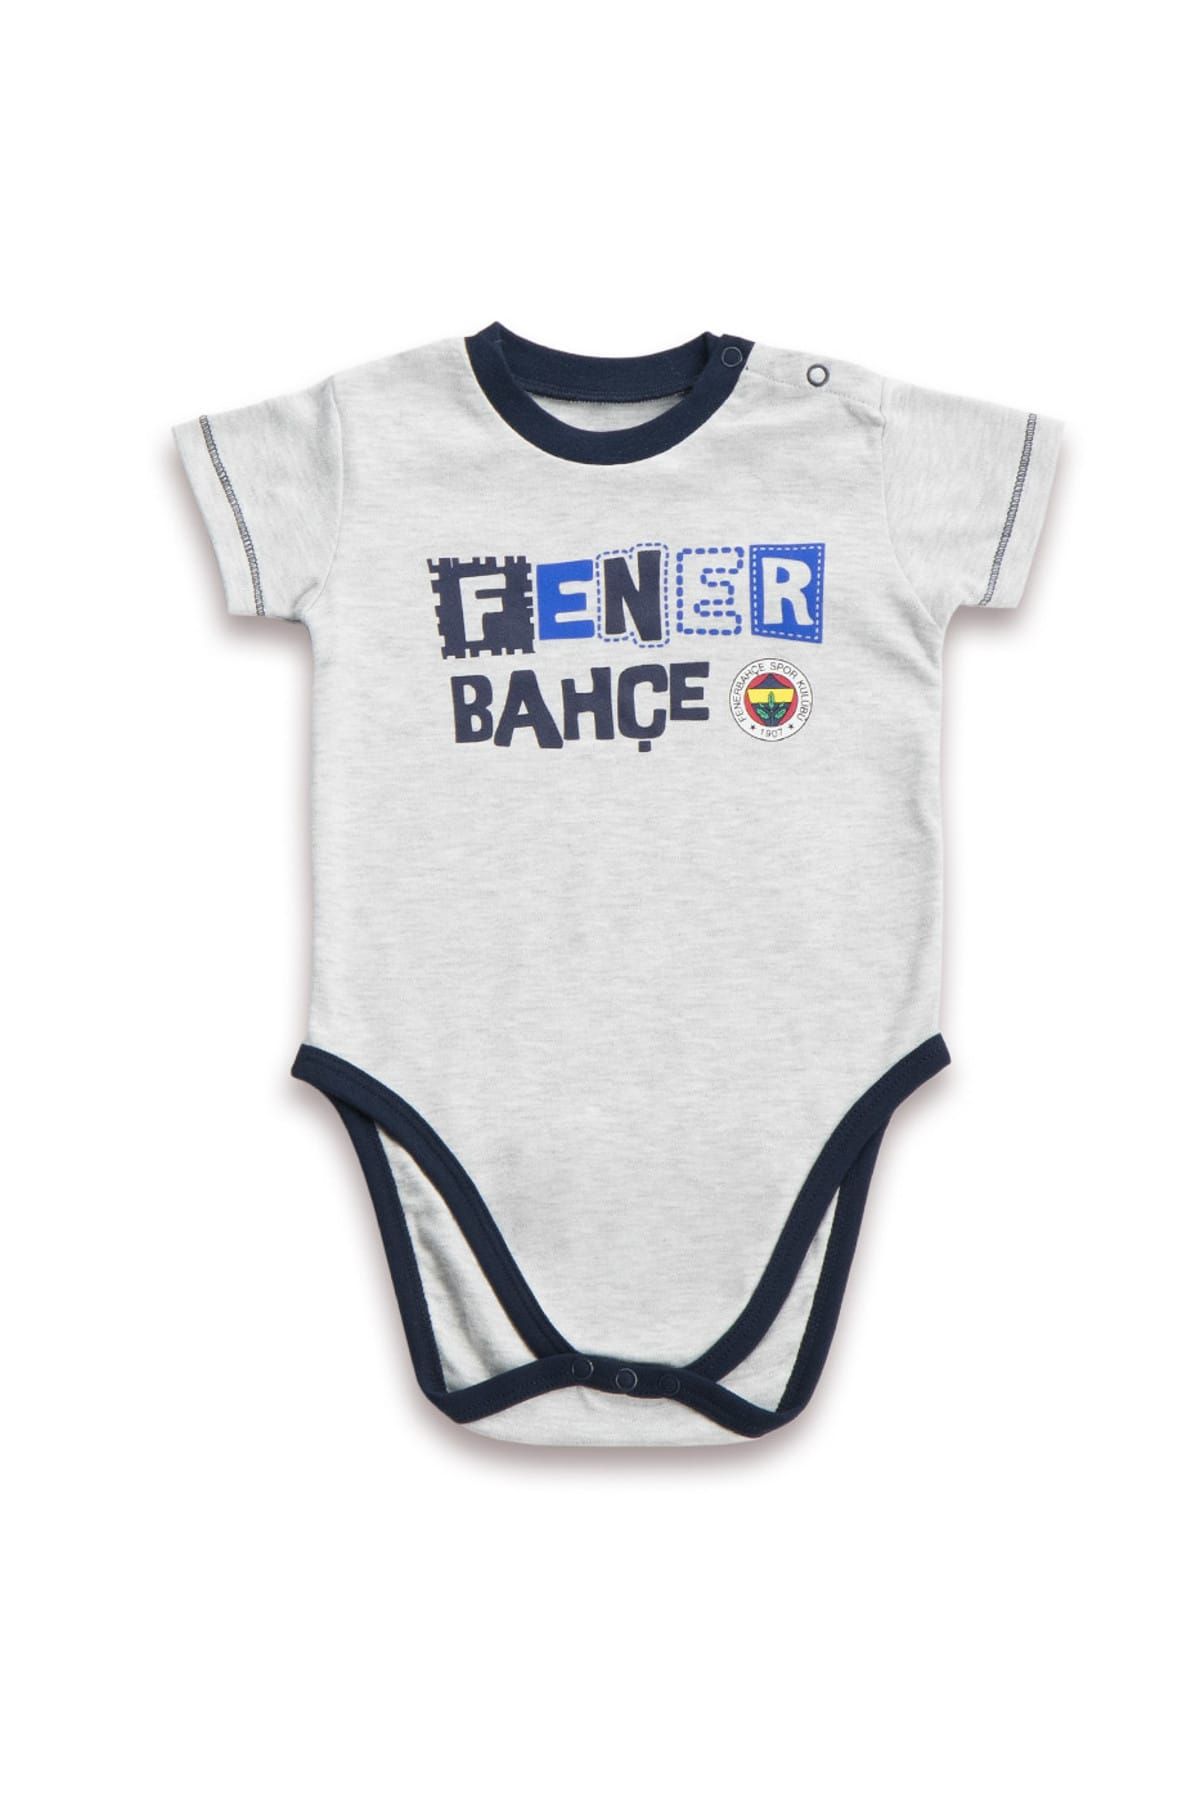 Fenerbahçe Fenerbahçe Lisanslı Unisex Bebek Body Karmelanj